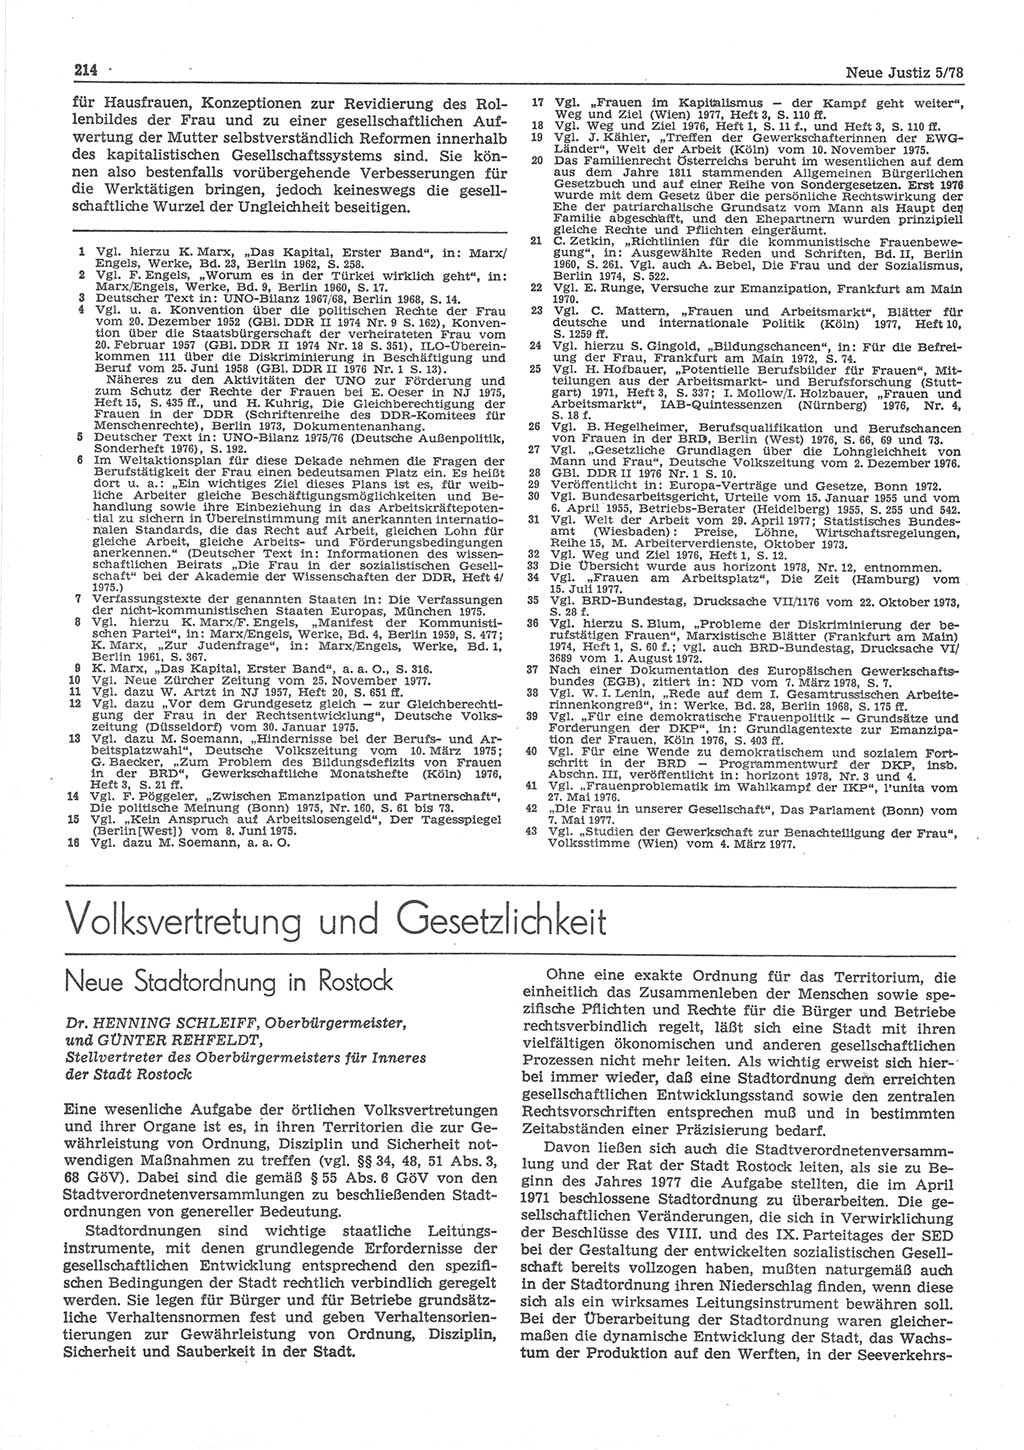 Neue Justiz (NJ), Zeitschrift für sozialistisches Recht und Gesetzlichkeit [Deutsche Demokratische Republik (DDR)], 32. Jahrgang 1978, Seite 214 (NJ DDR 1978, S. 214)